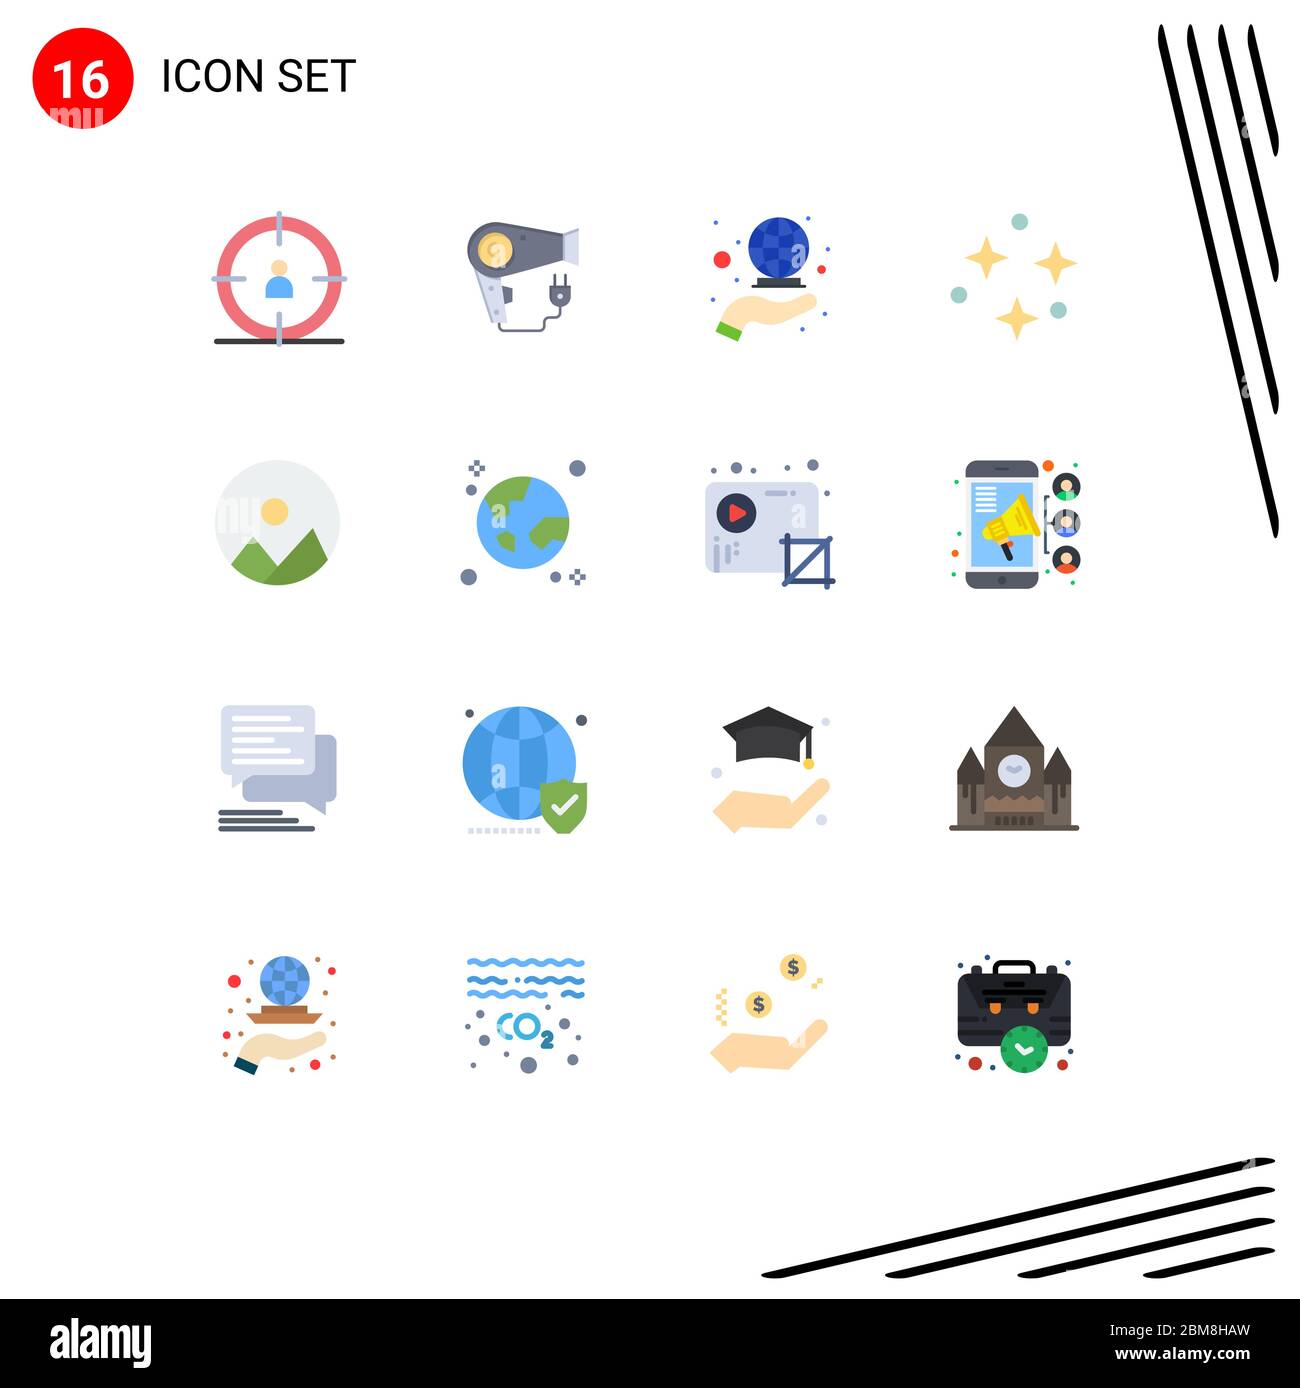 Set di 16 icone moderne dell'interfaccia utente simboli per rotondo, immagine, globale, stelle, SKY pacchetto di elementi Creative Vector Design Illustrazione Vettoriale